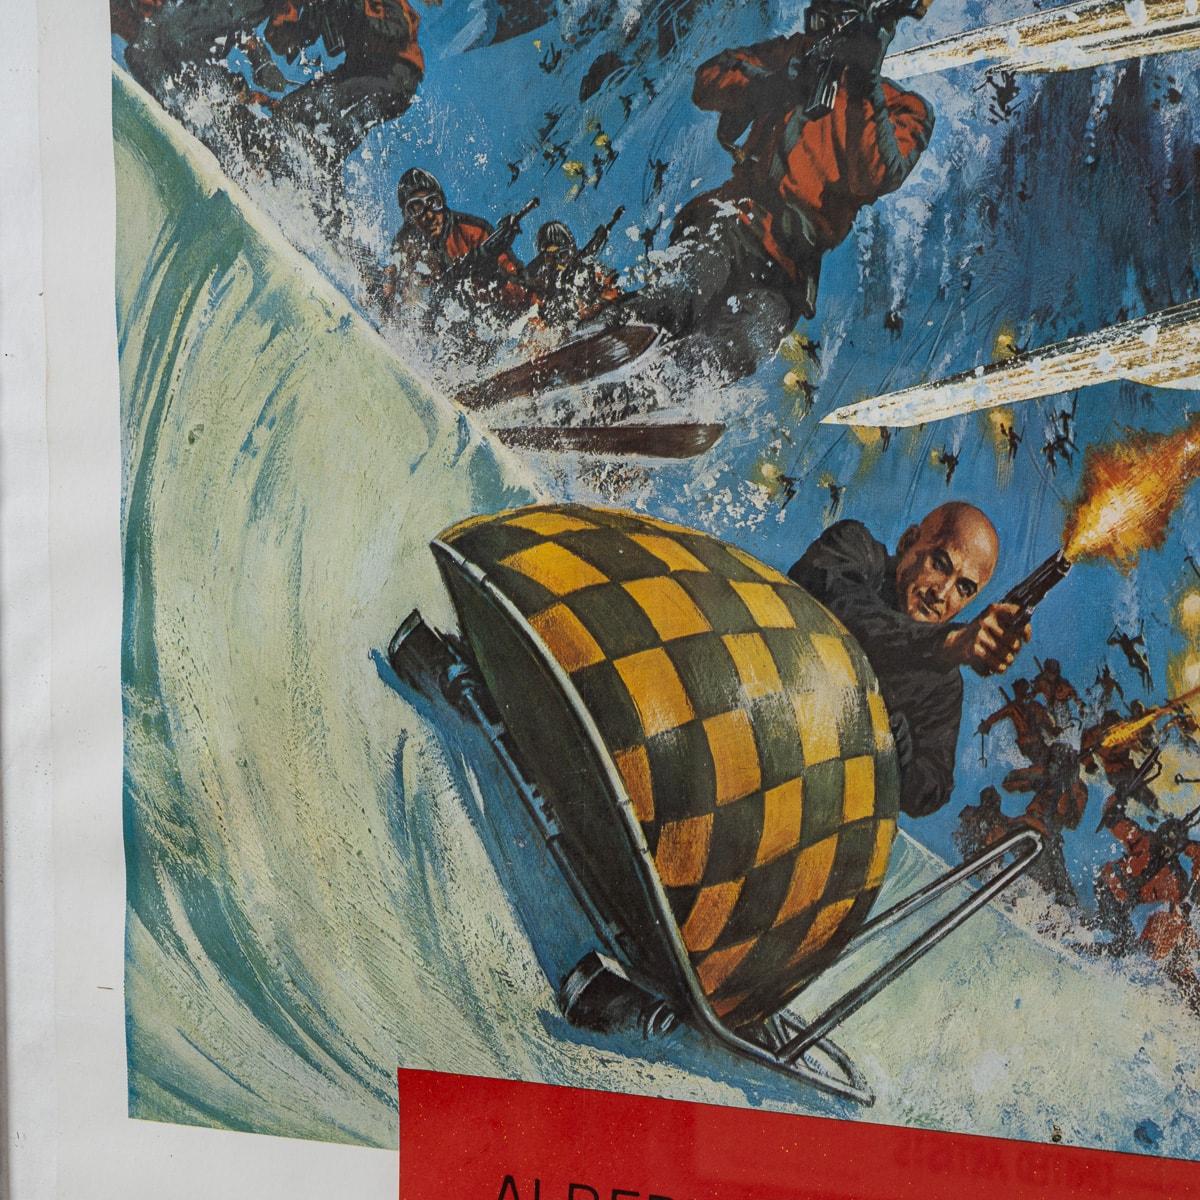 U.S Release James Bond 007 'On Her Majesty's Secret Service' Poster c.1969 For Sale 7